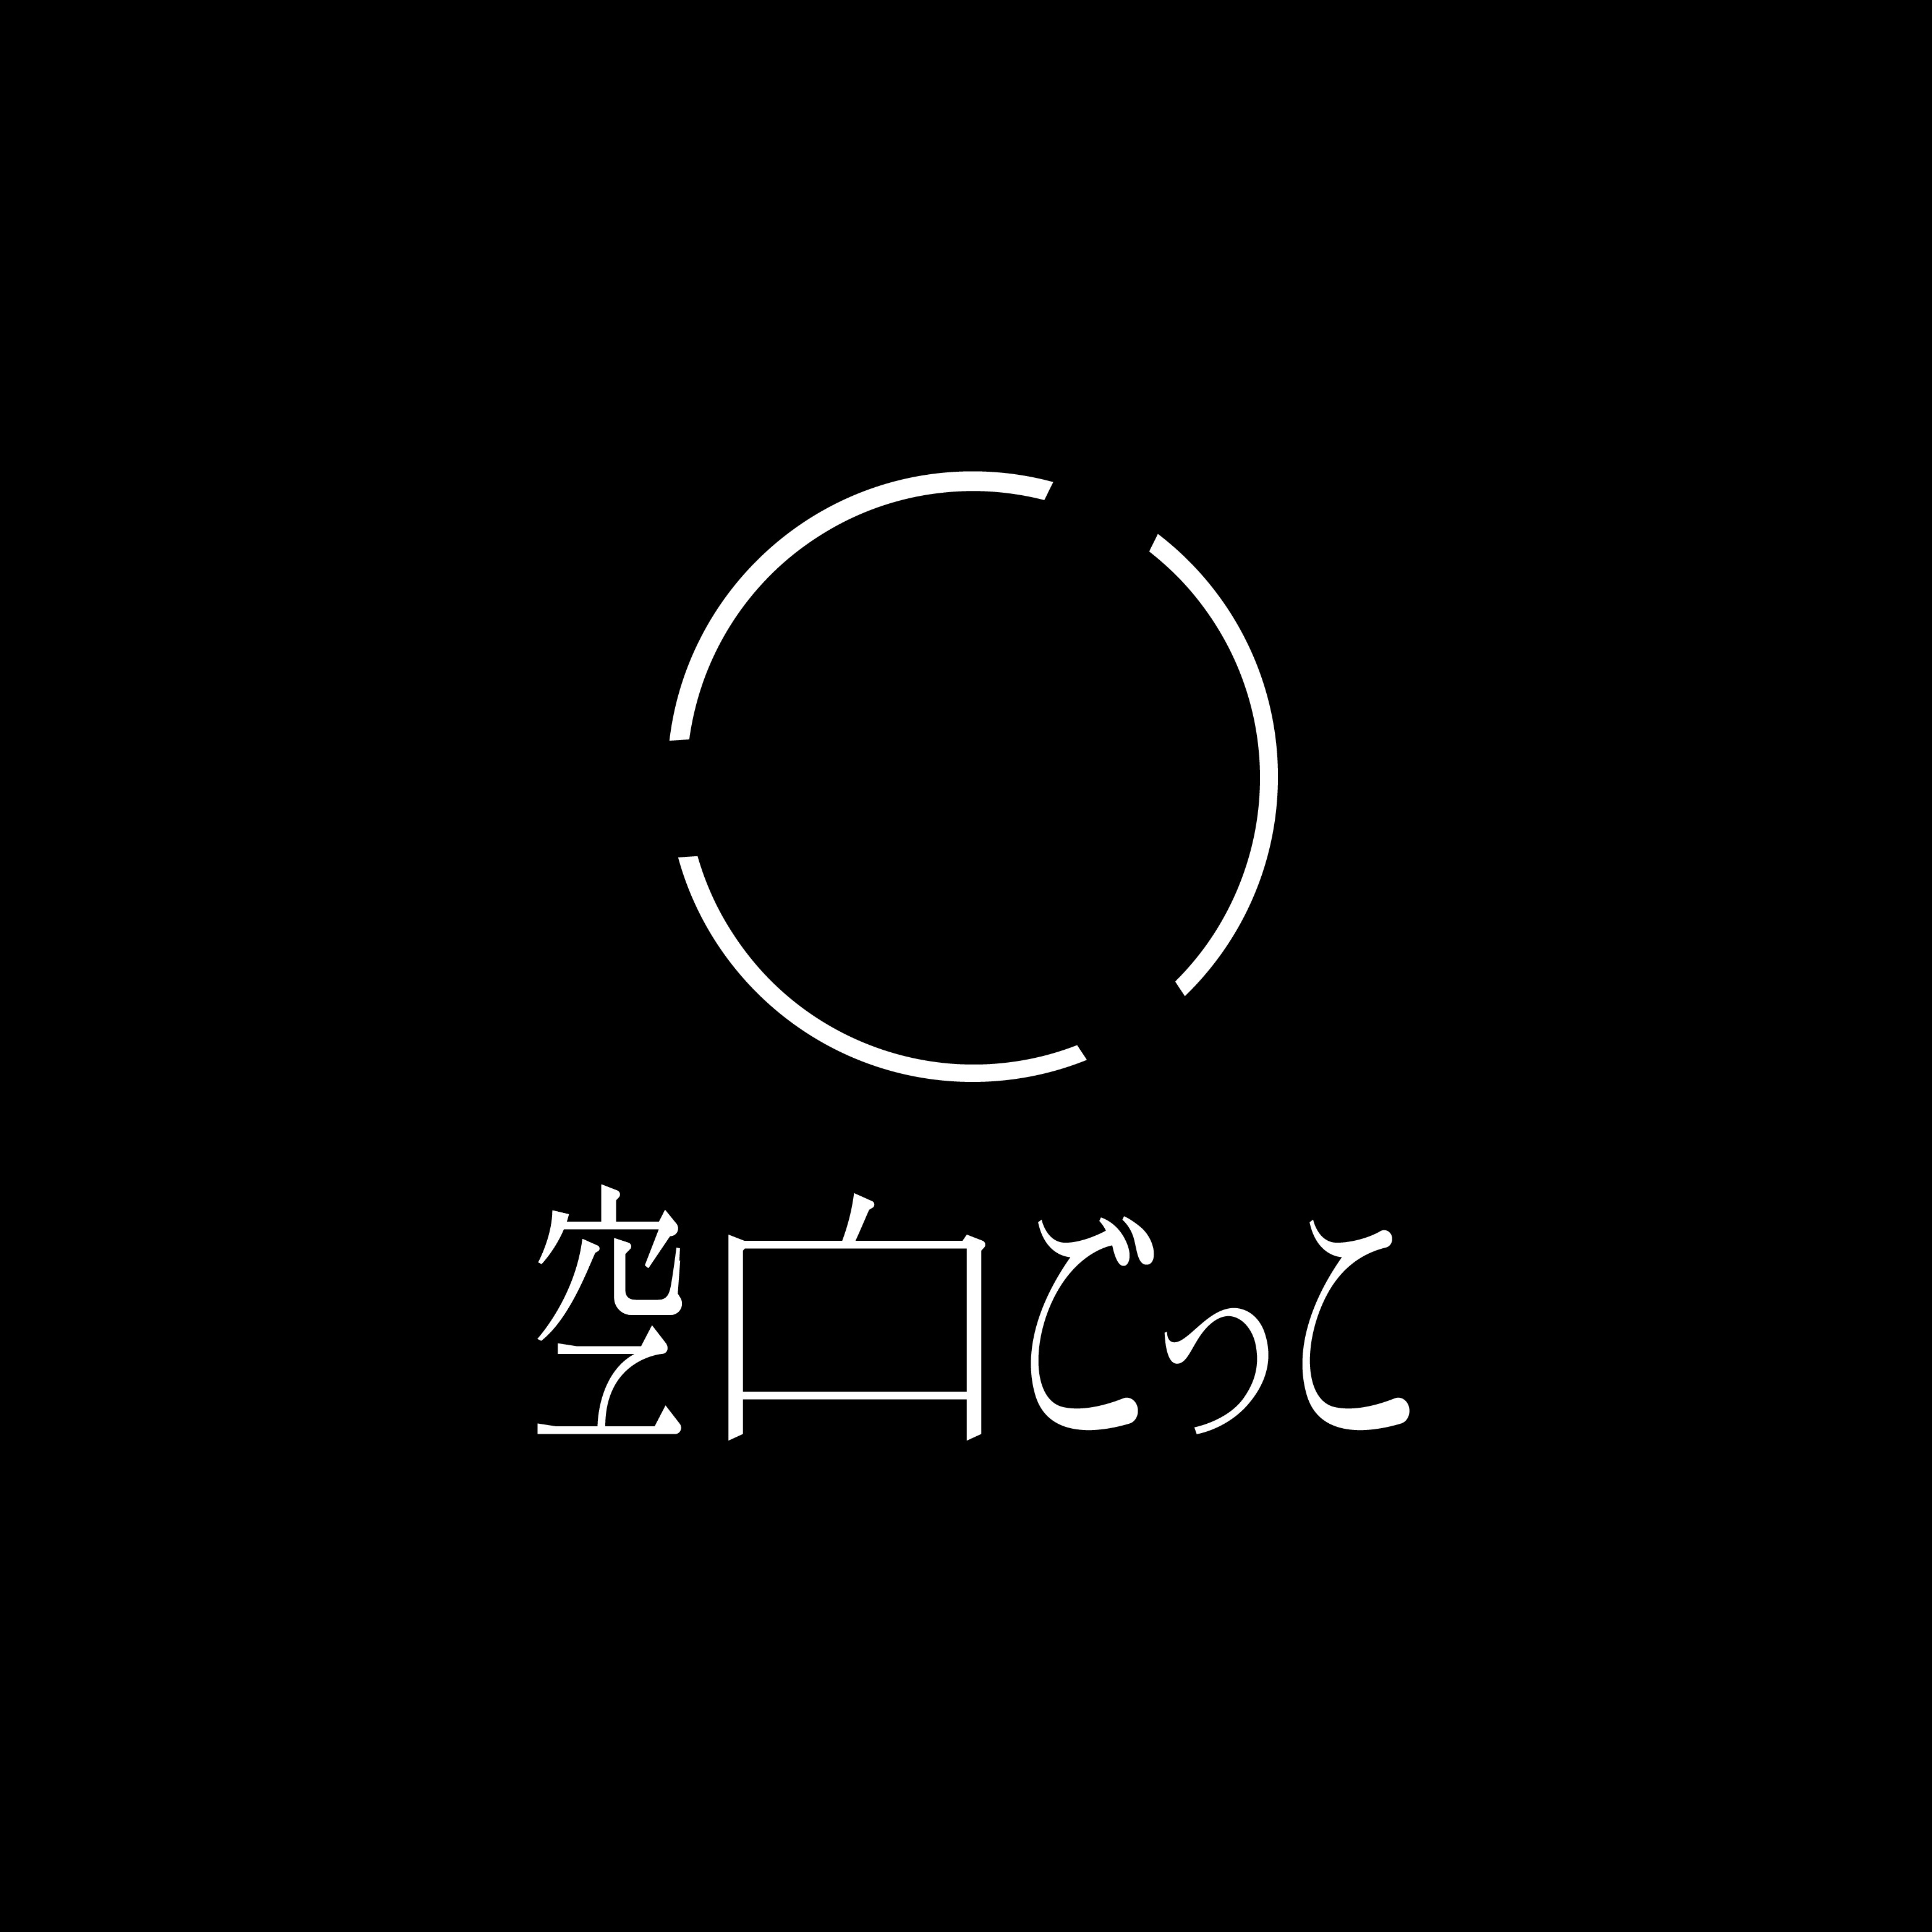 空白ごっこ、1st Full Album『マイナスゼロ』の全収録楽曲とジャケット ...